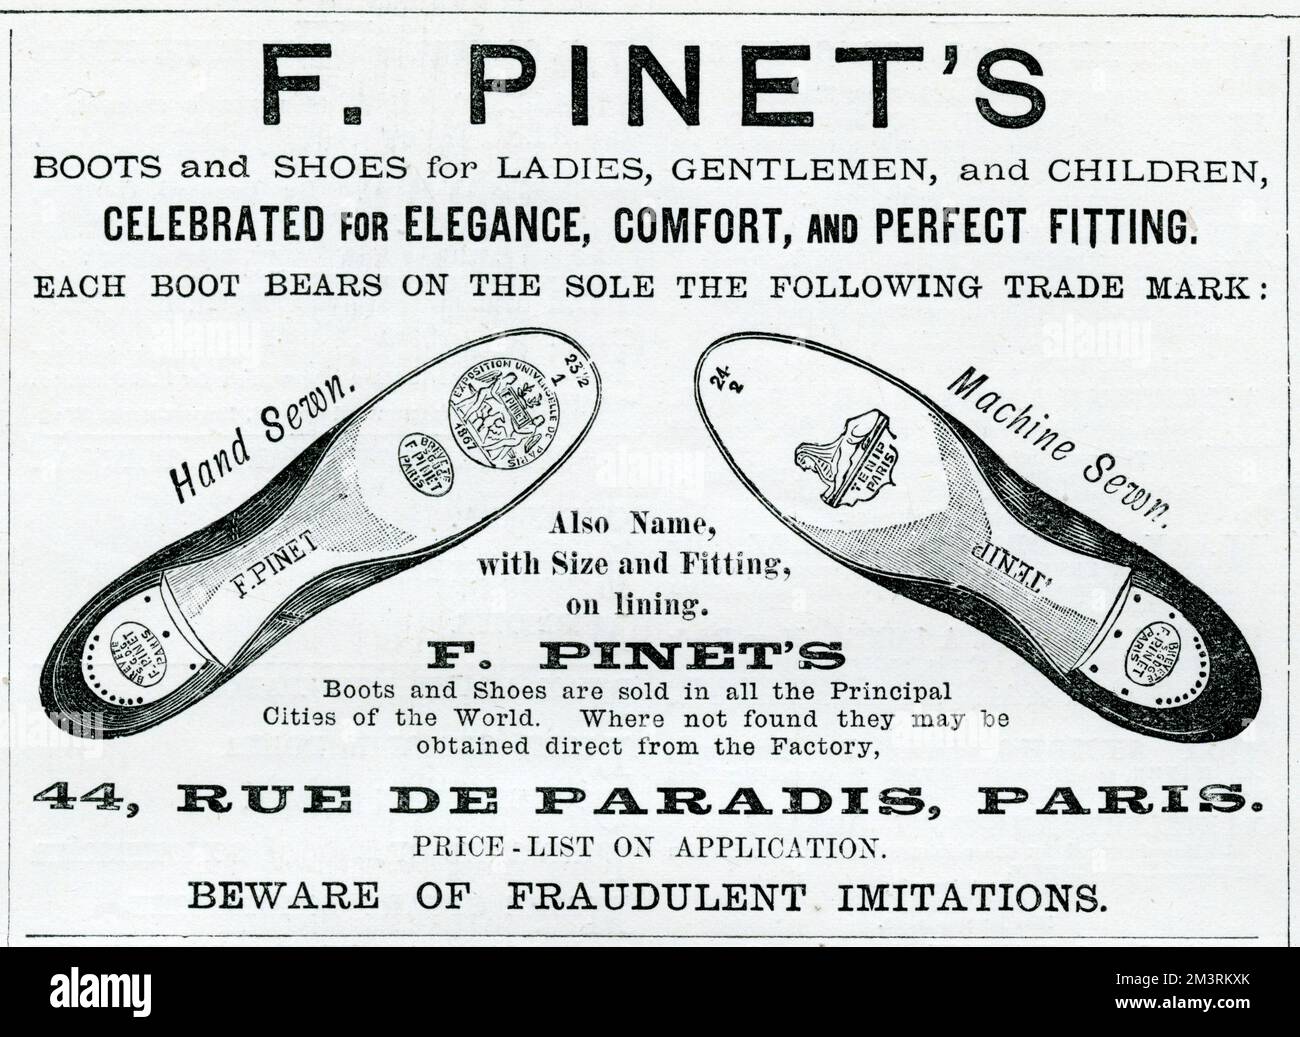 Werbung für Pinets Schuhe - Stiefel und Schuhe für Damen, Herren und Kinder. 1887 Stockfoto